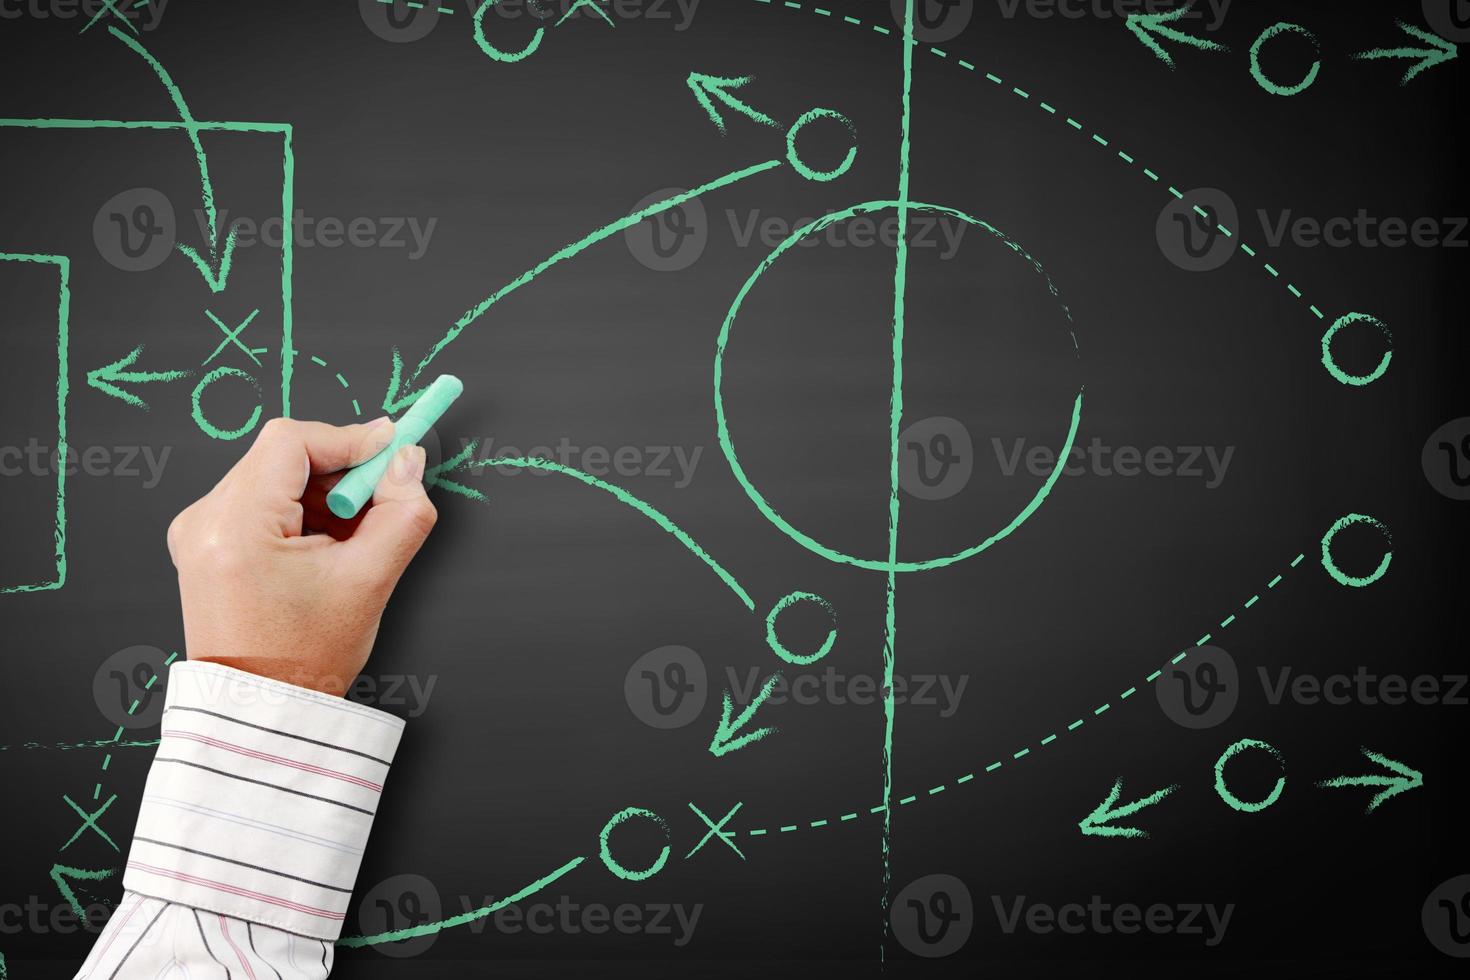 schéma tactique de jeu de football avec des joueurs de football et des flèches de stratégie. photo